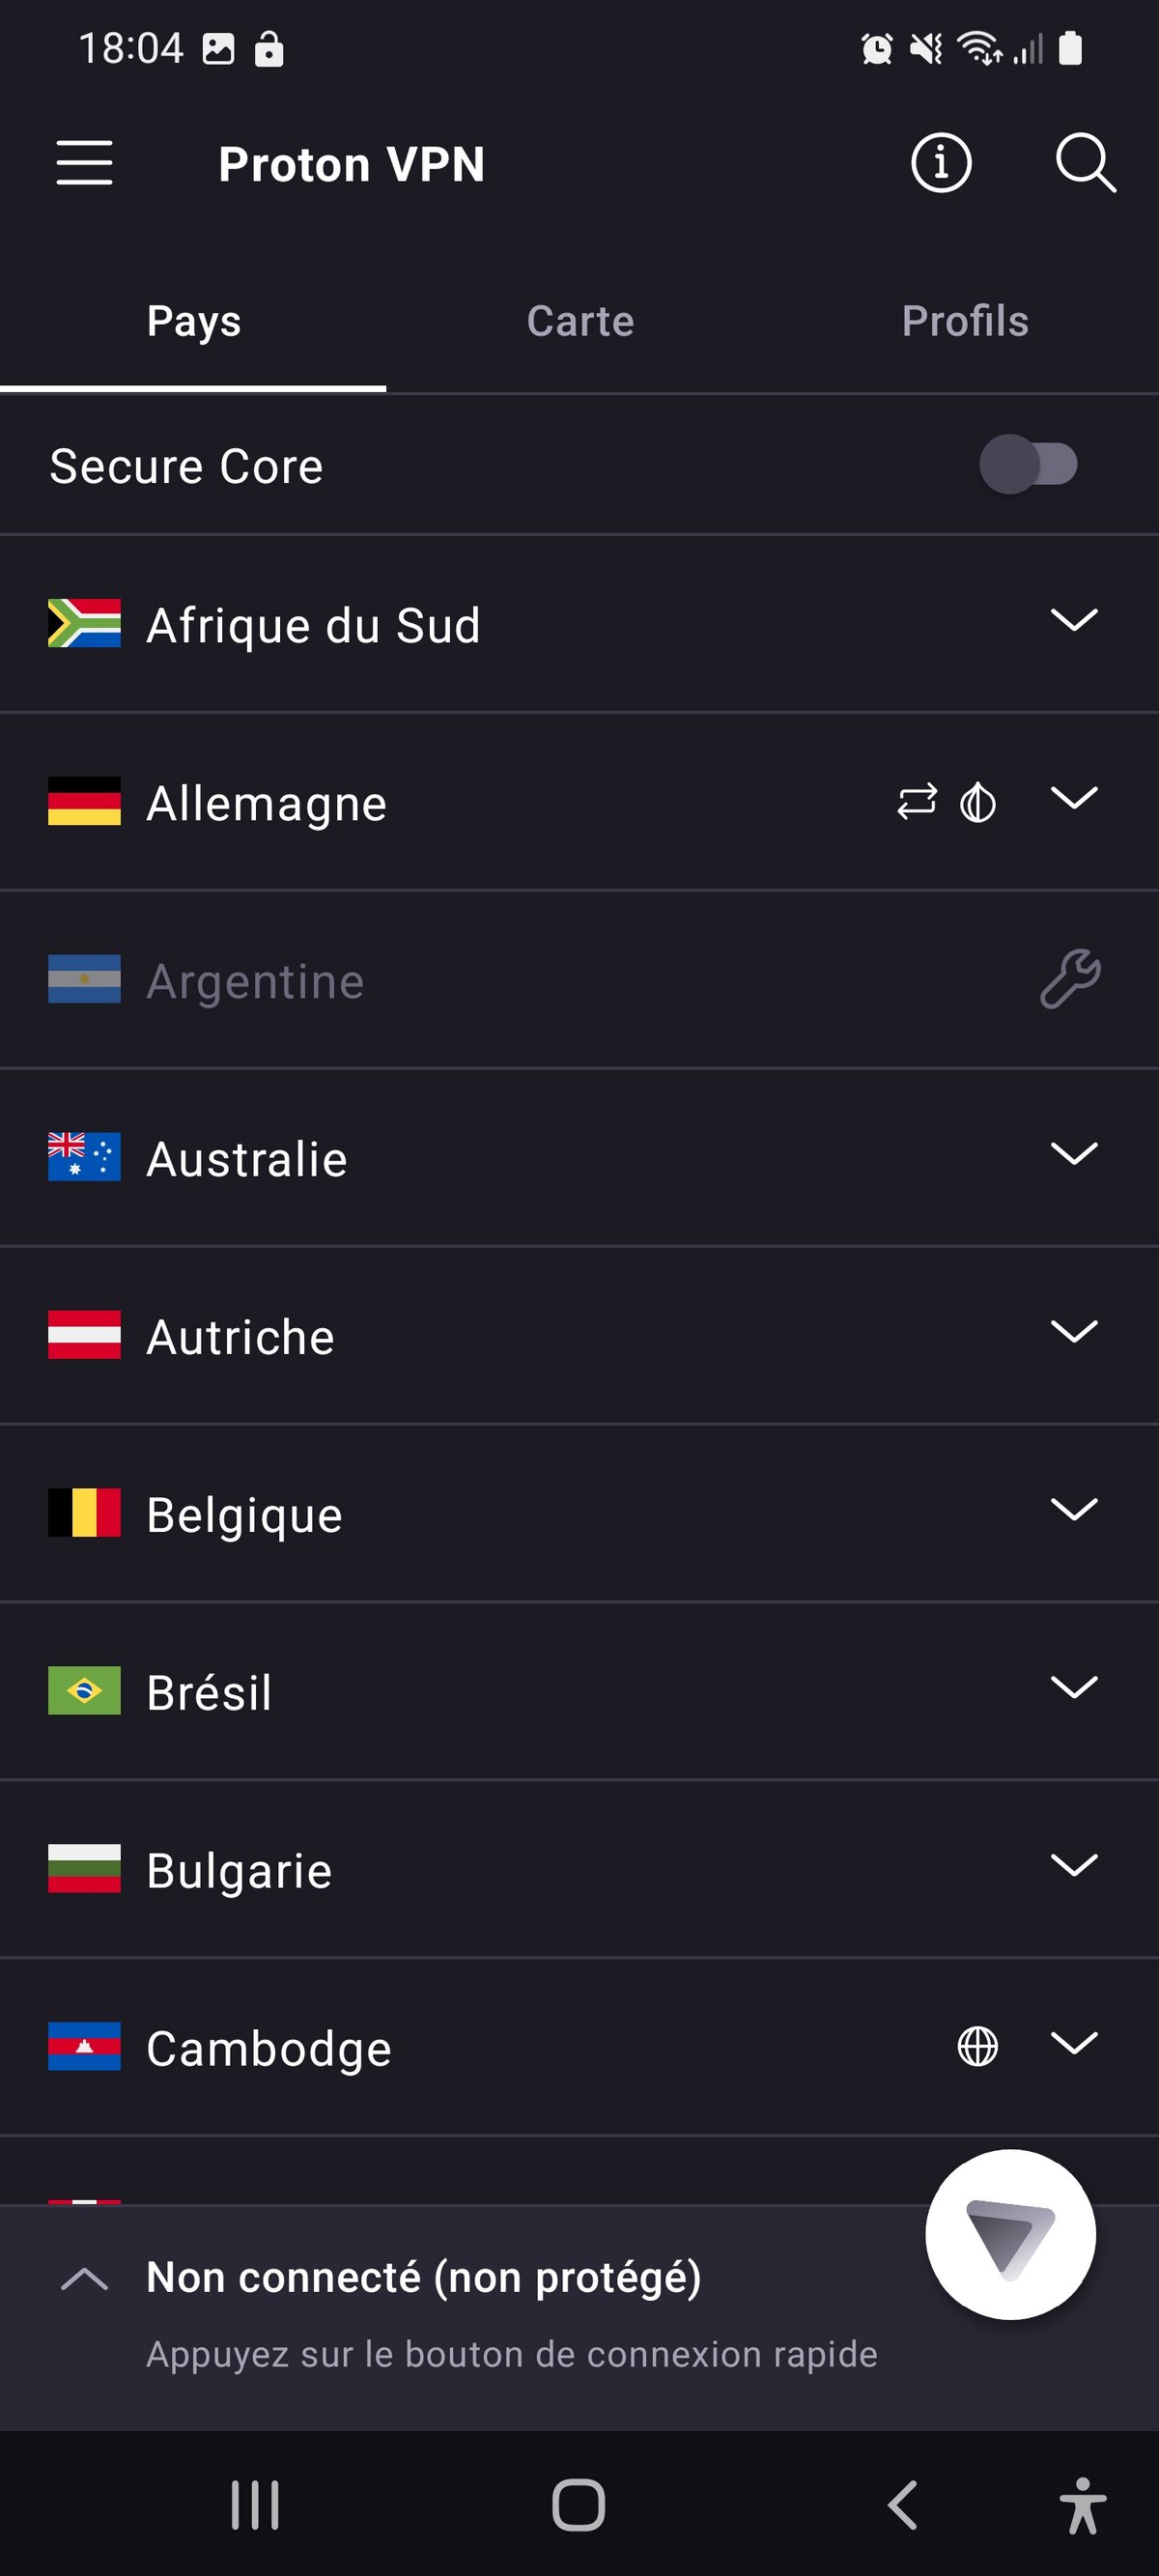 Proton VPN - La liste des pays sur Android